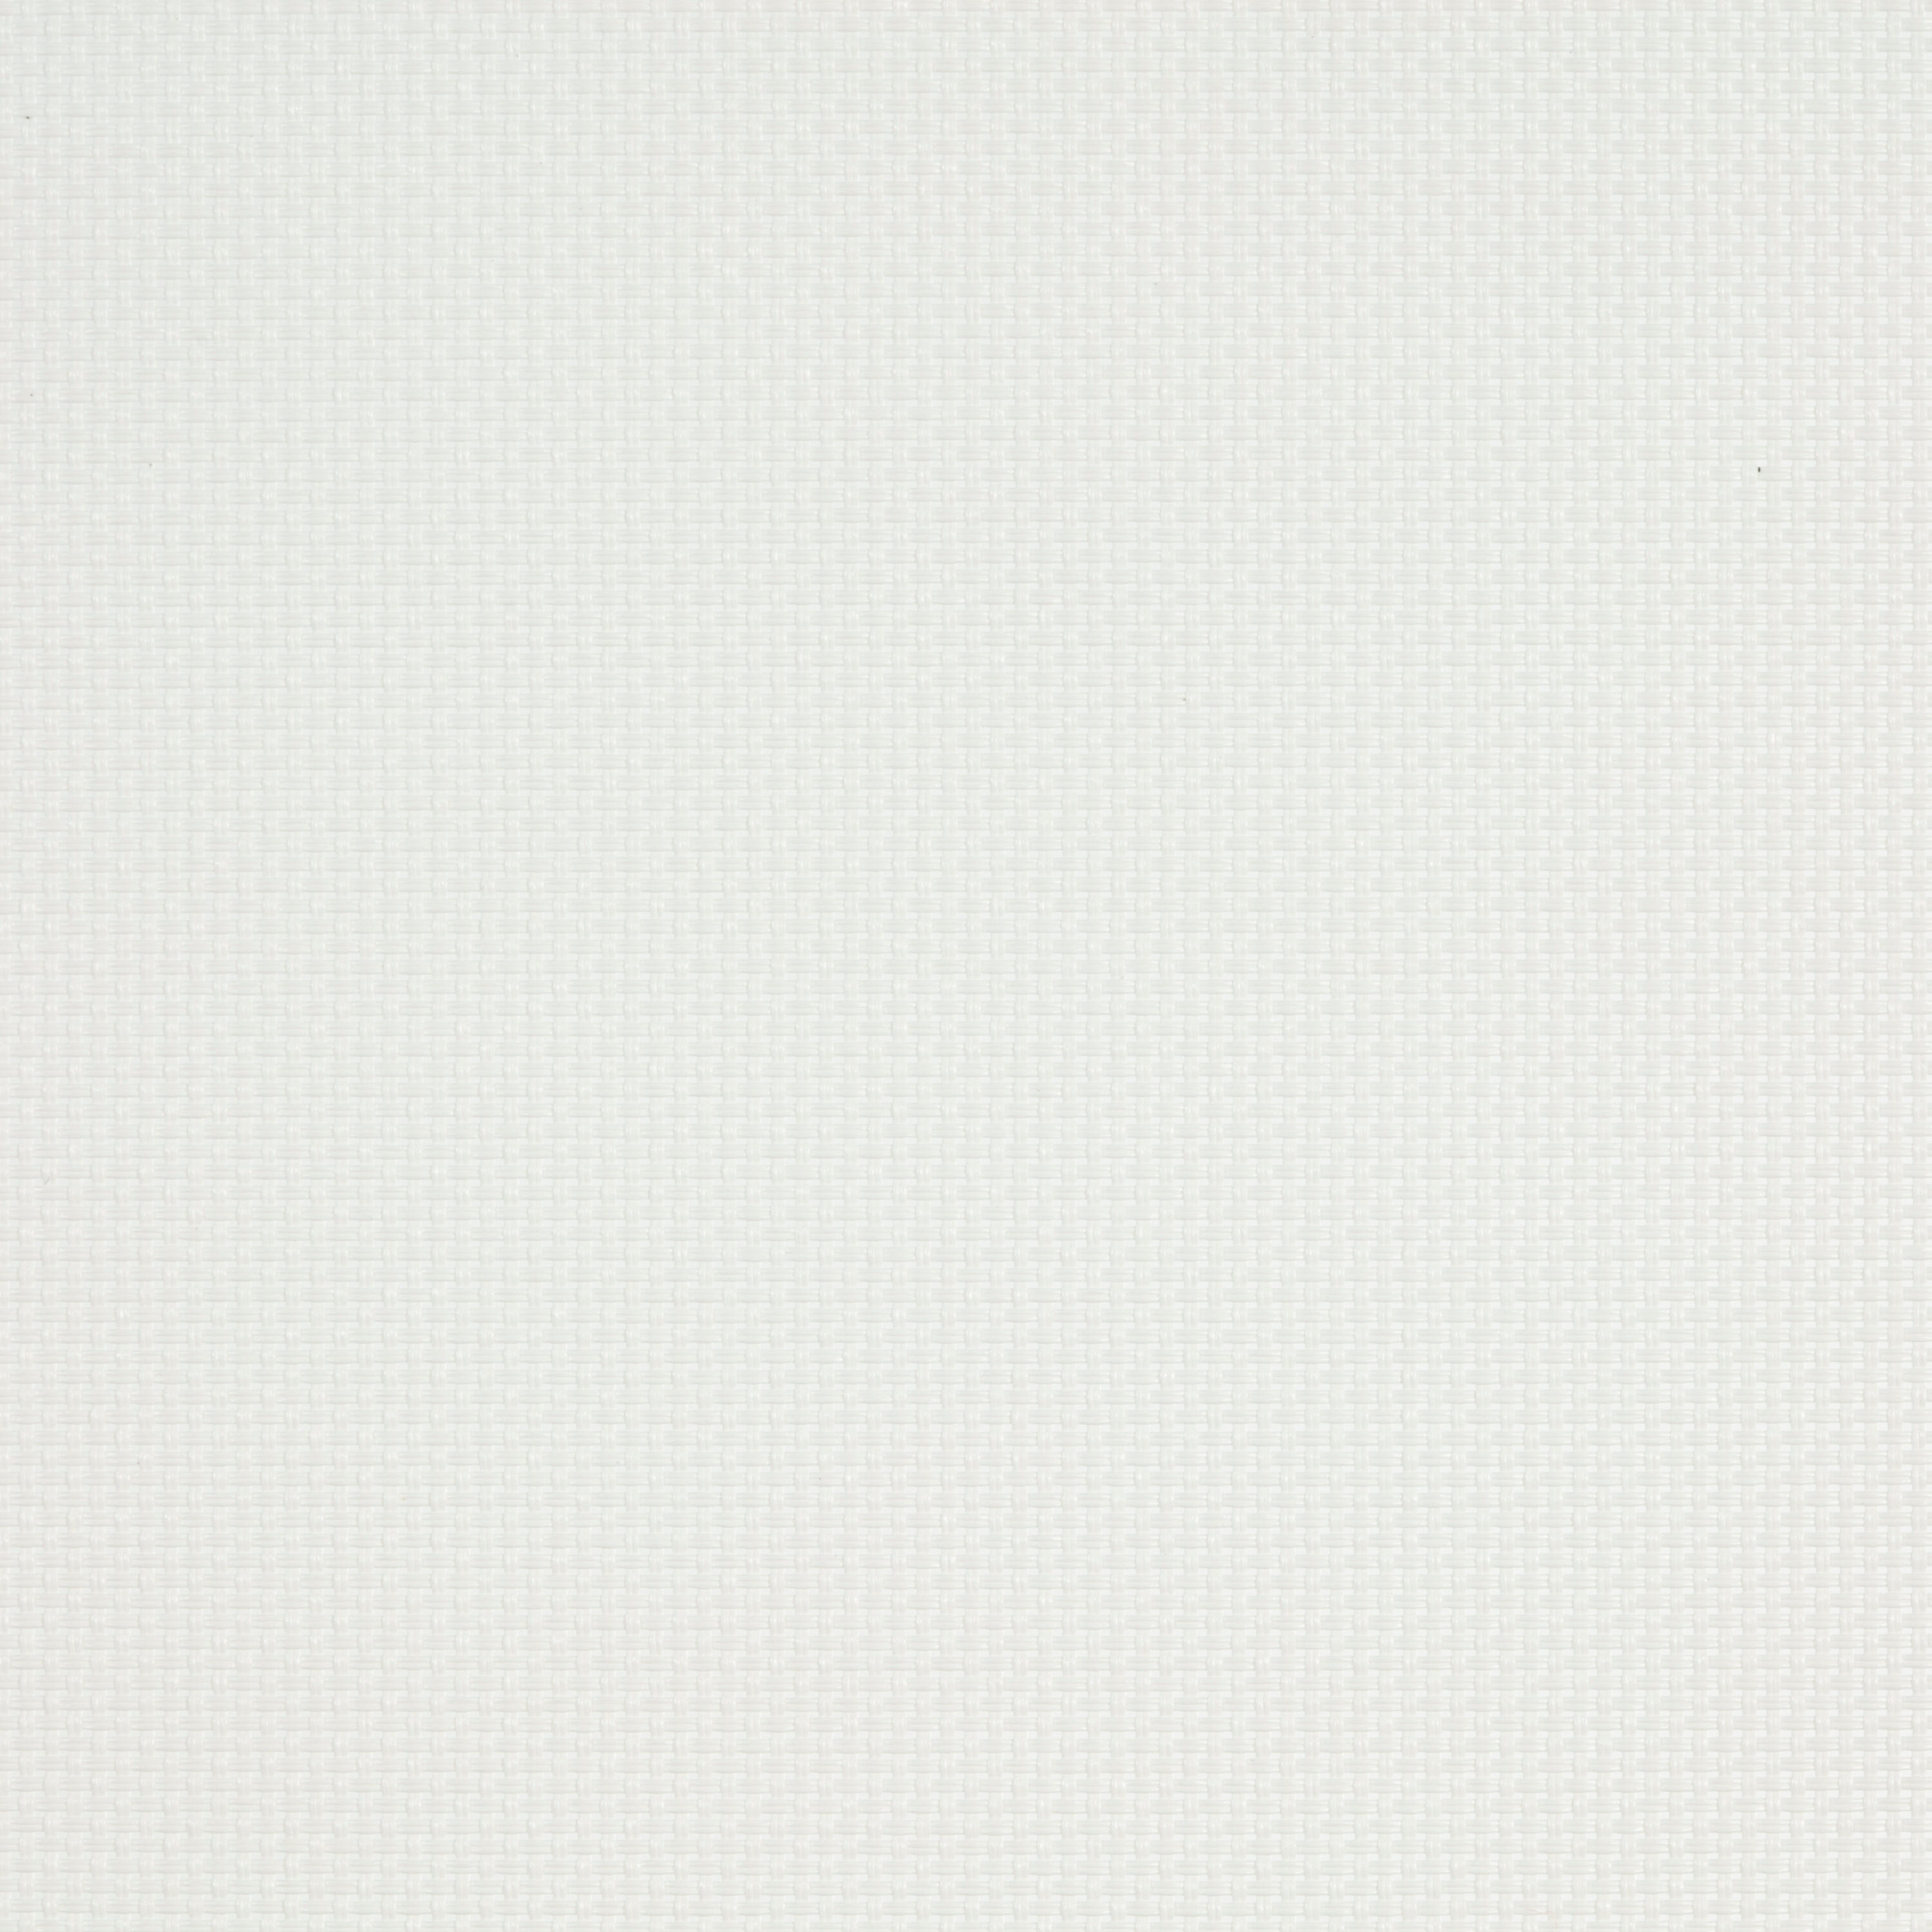 Tenda a rullo filtrante INSPIRE Brasilia bianco 165 x 250 cm - 6